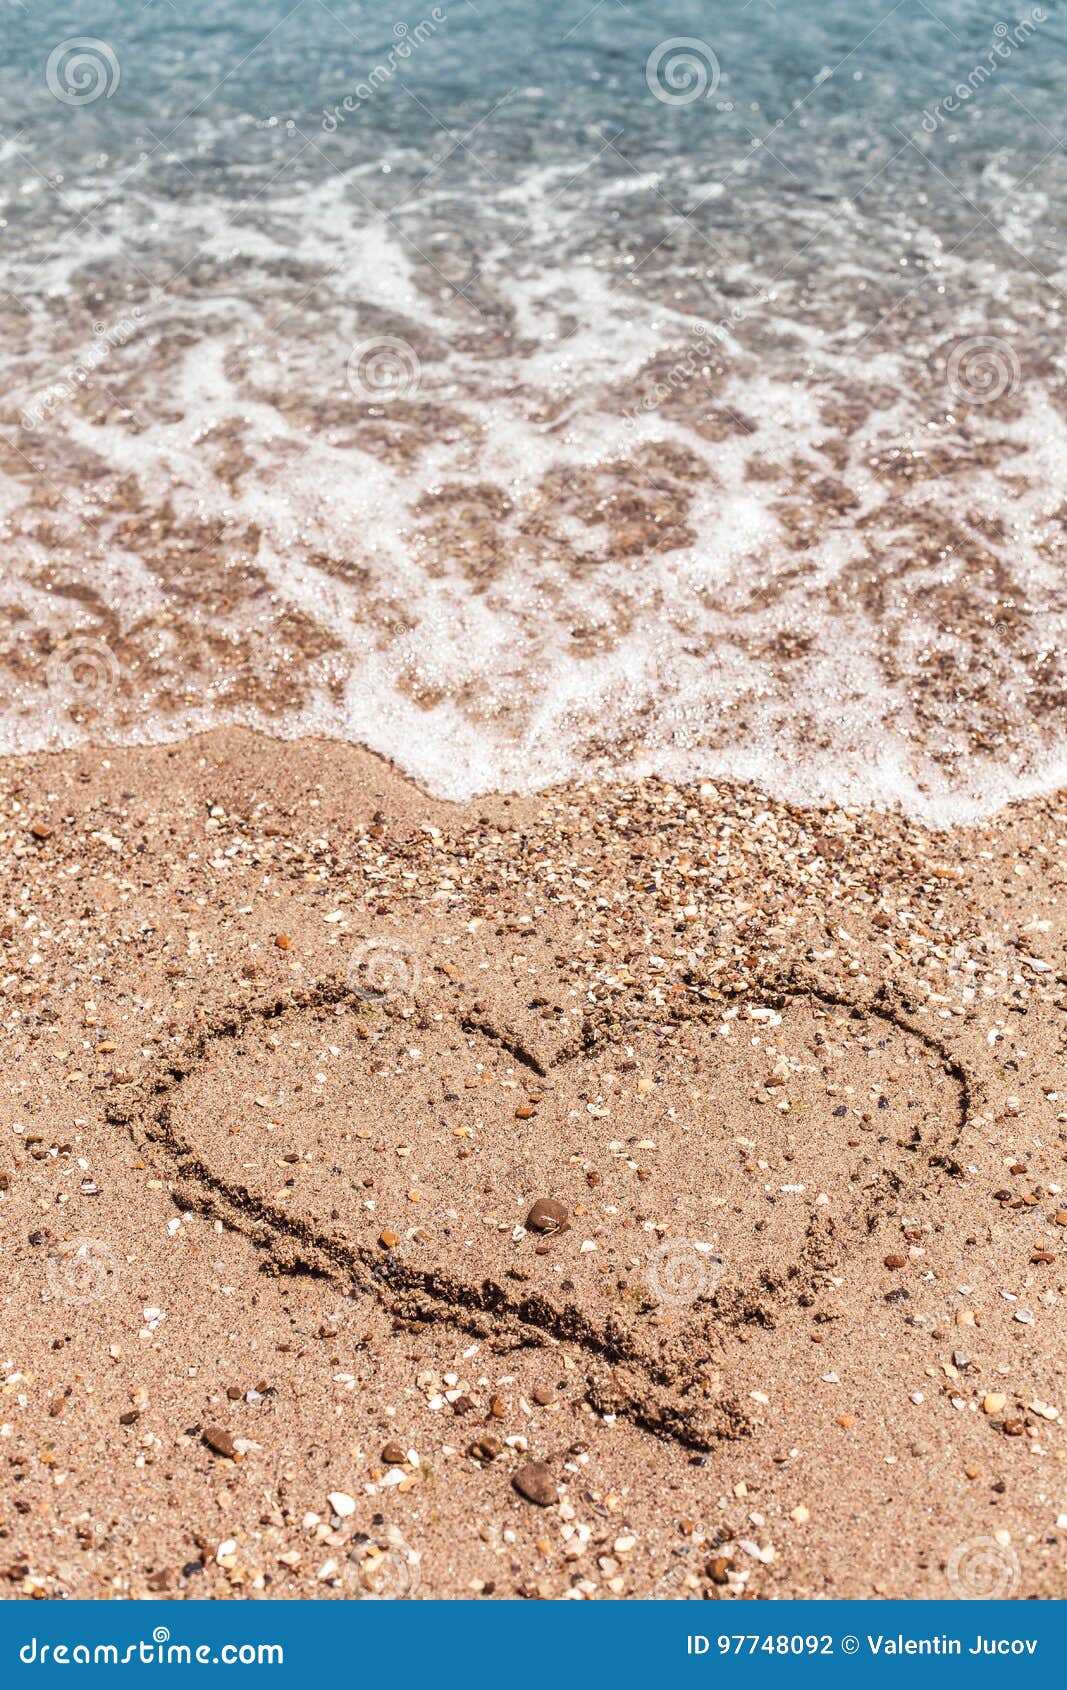 dessin d'une forme de coeur sur le sable et vague avec de la